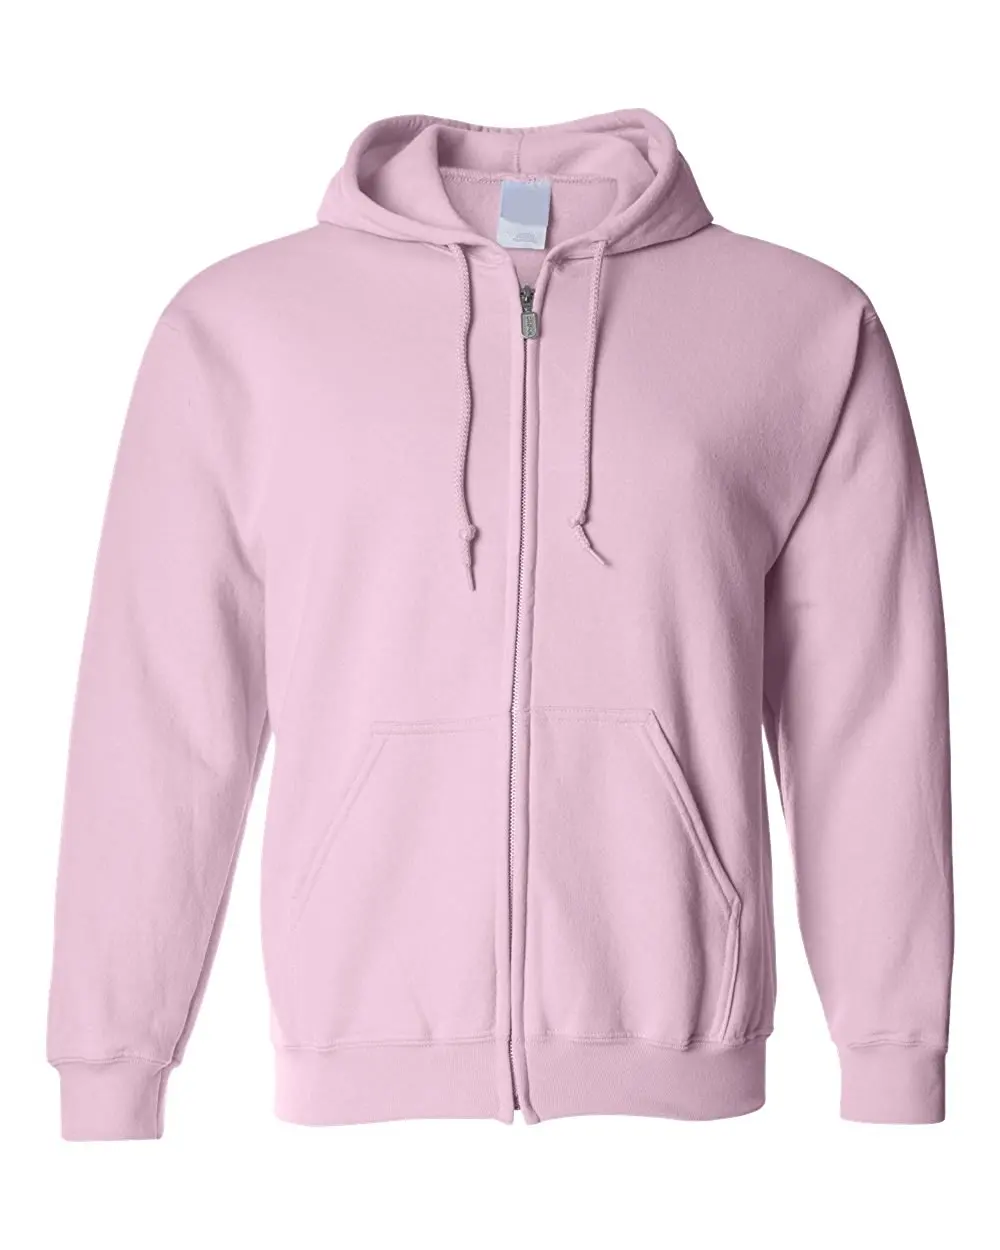 pink zip up hoodie mens